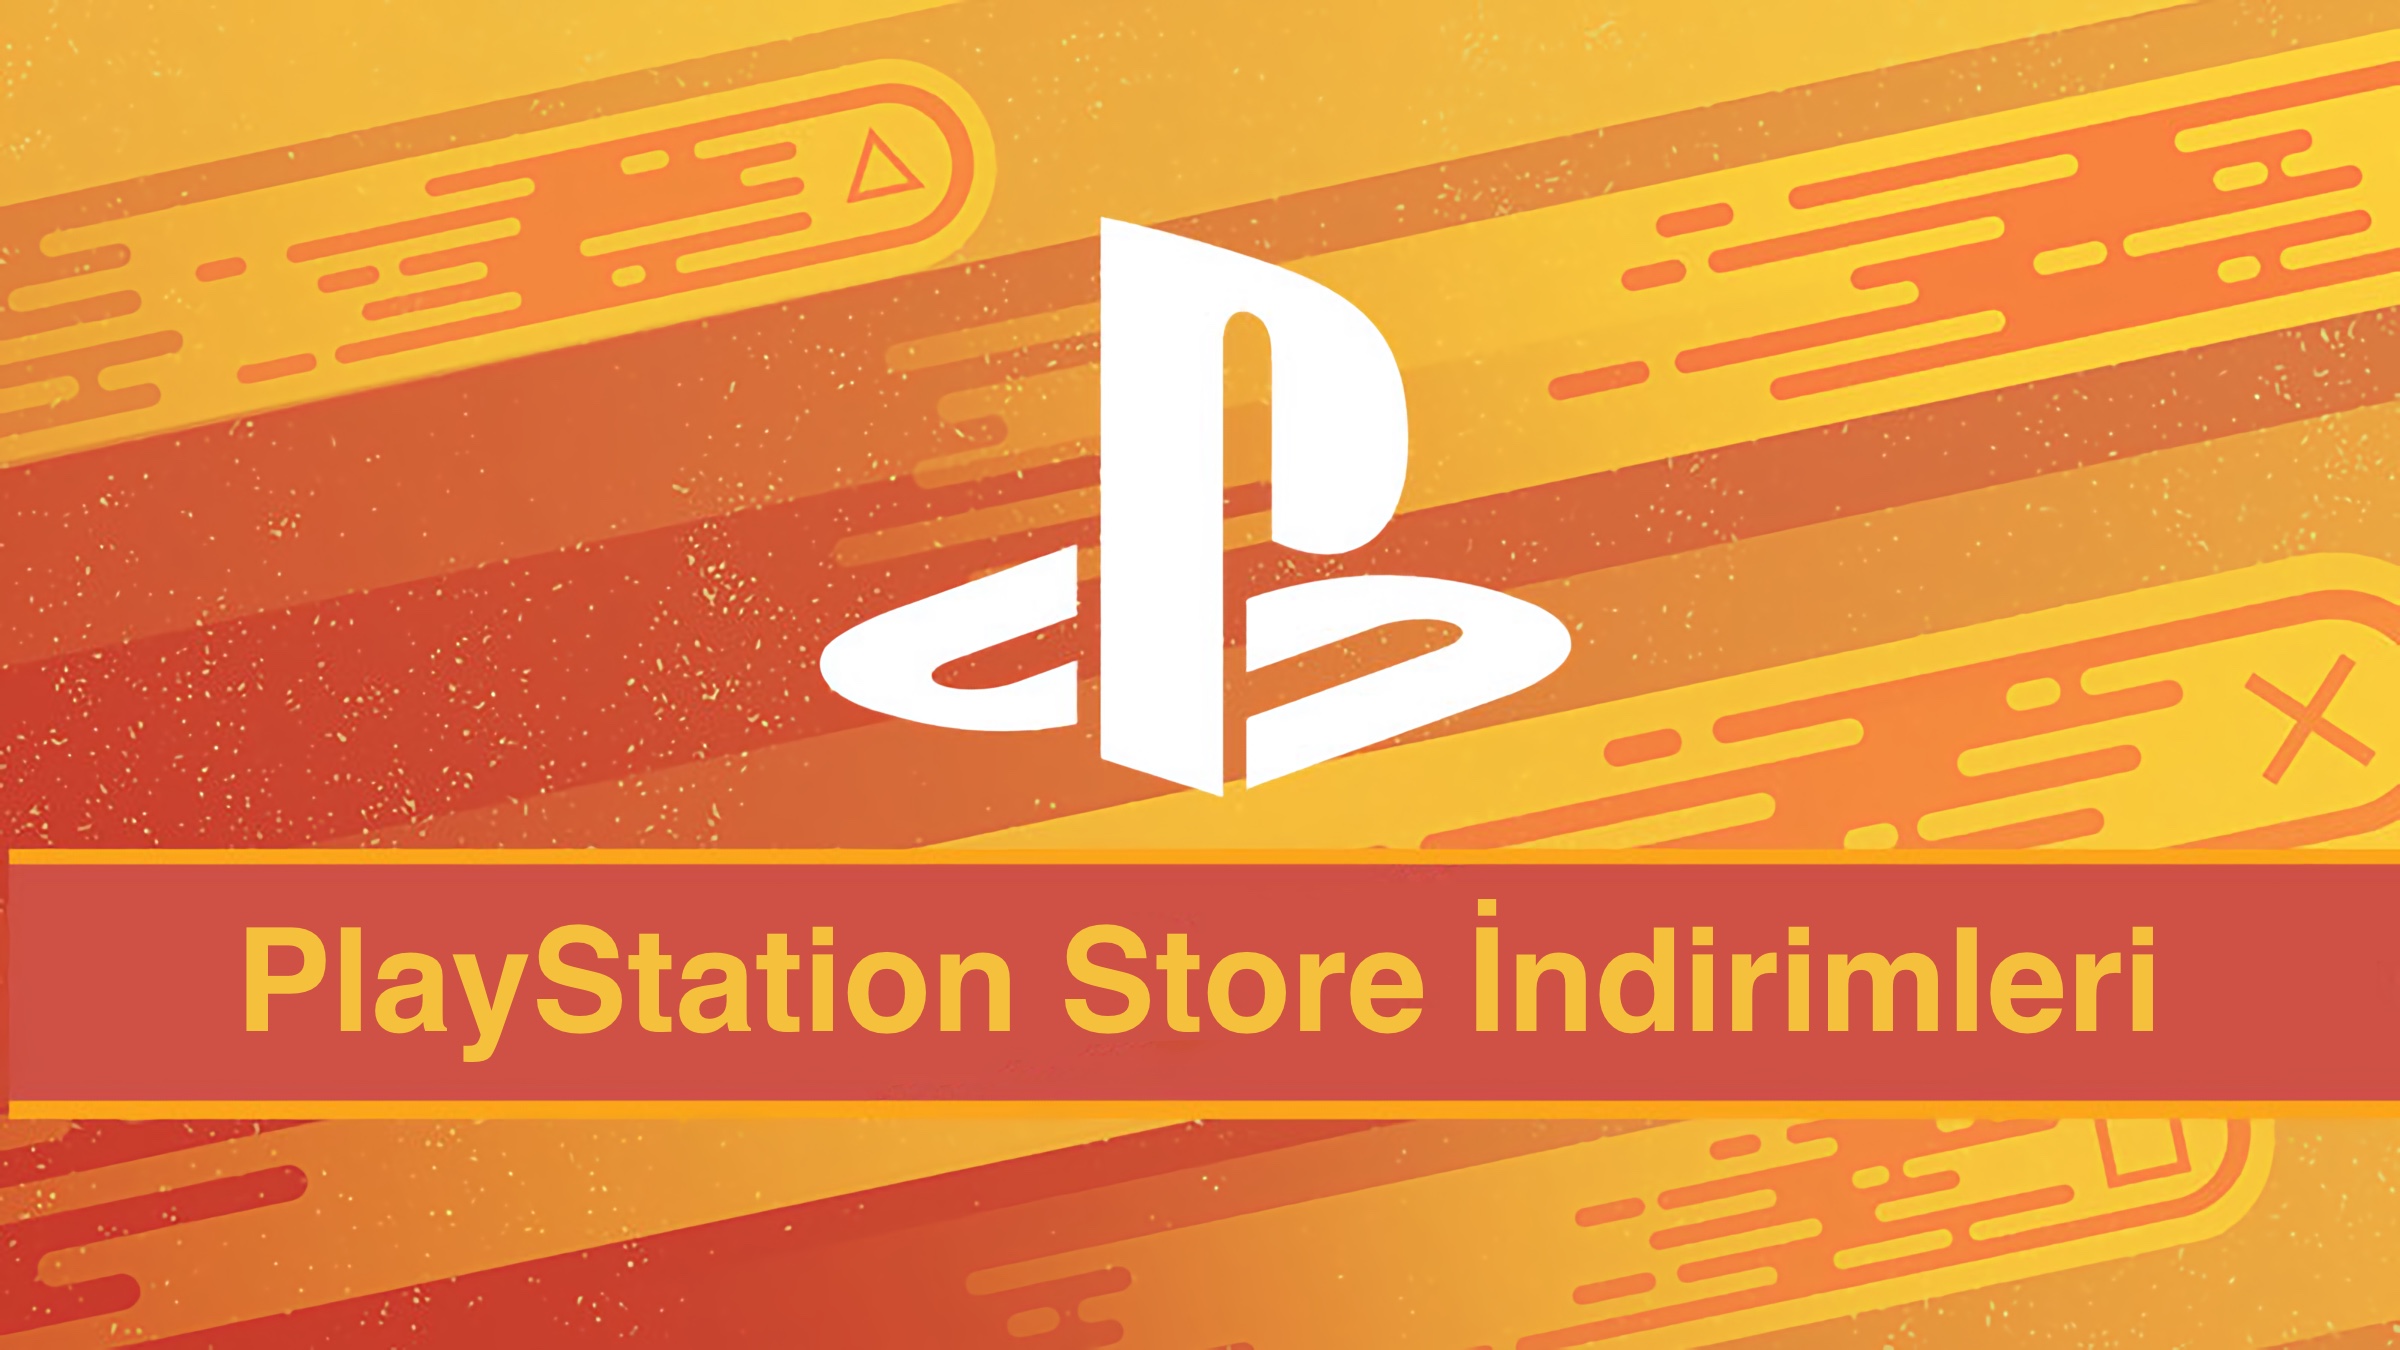 PlayStation Store-k deskontu haizea abian jarri zuen!